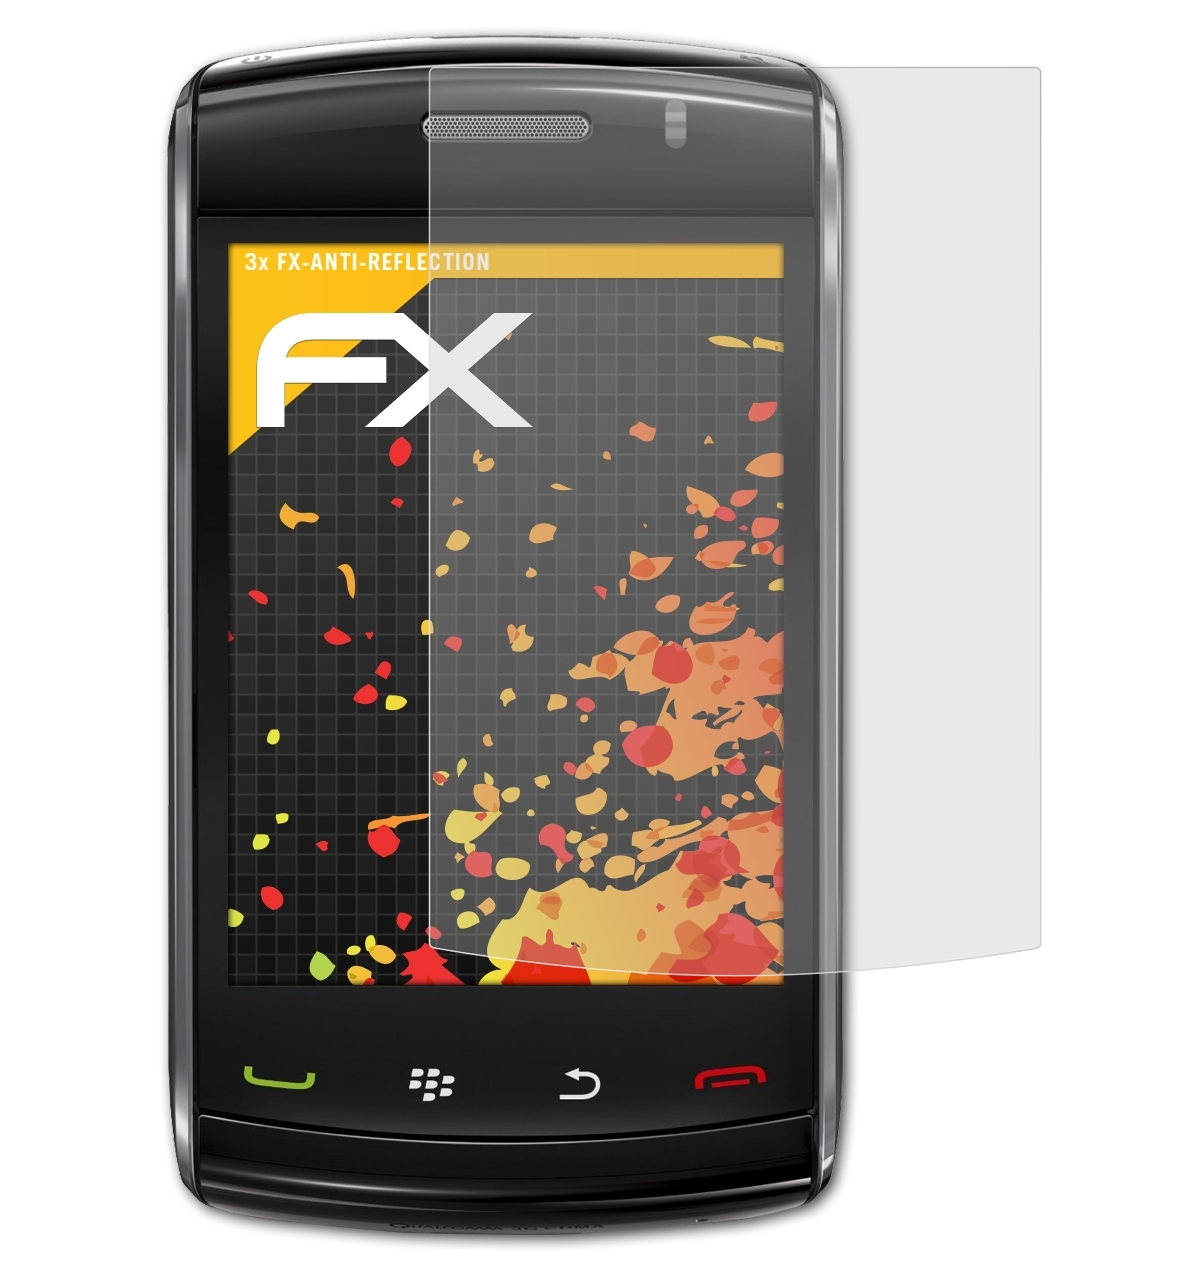 3x ATFOLIX FX-Antireflex Displayschutz(für 9520 Blackberry Storm2)